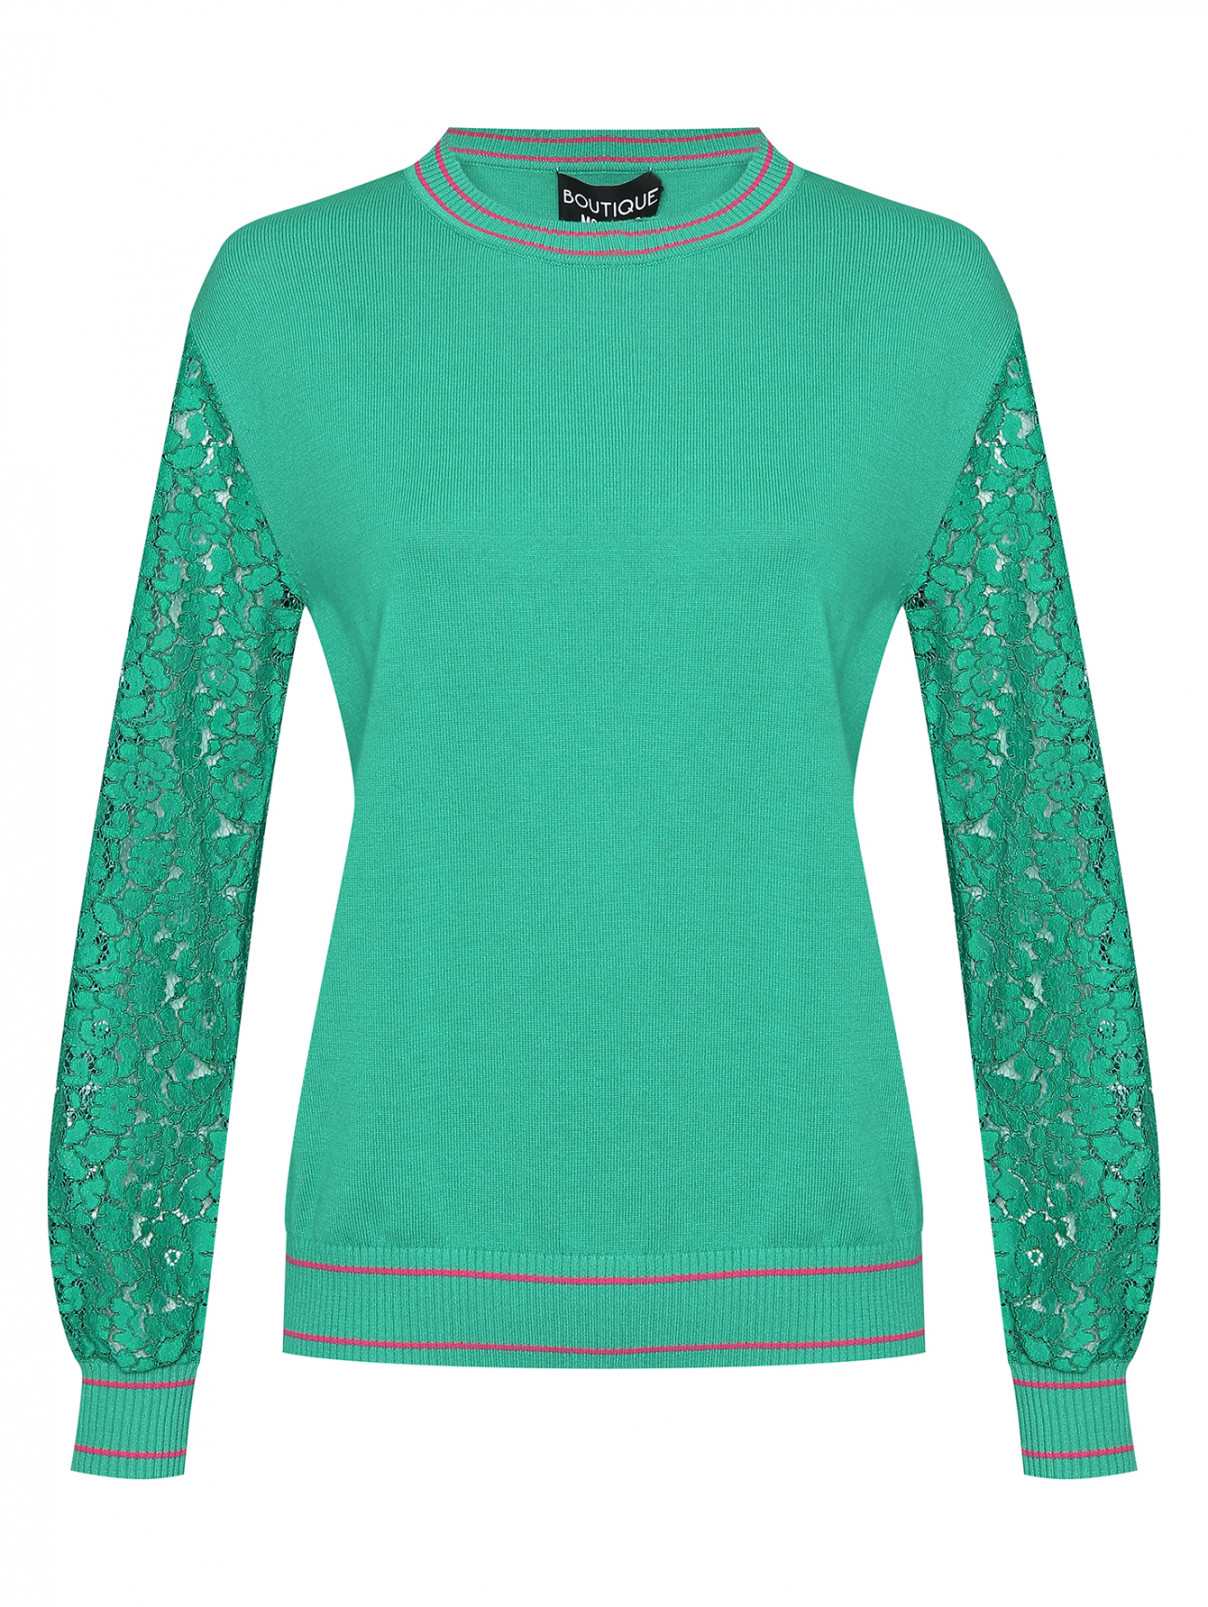 Джемпер с контрастной отделкой с круглым вырезом Moschino Boutique  –  Общий вид  – Цвет:  Зеленый